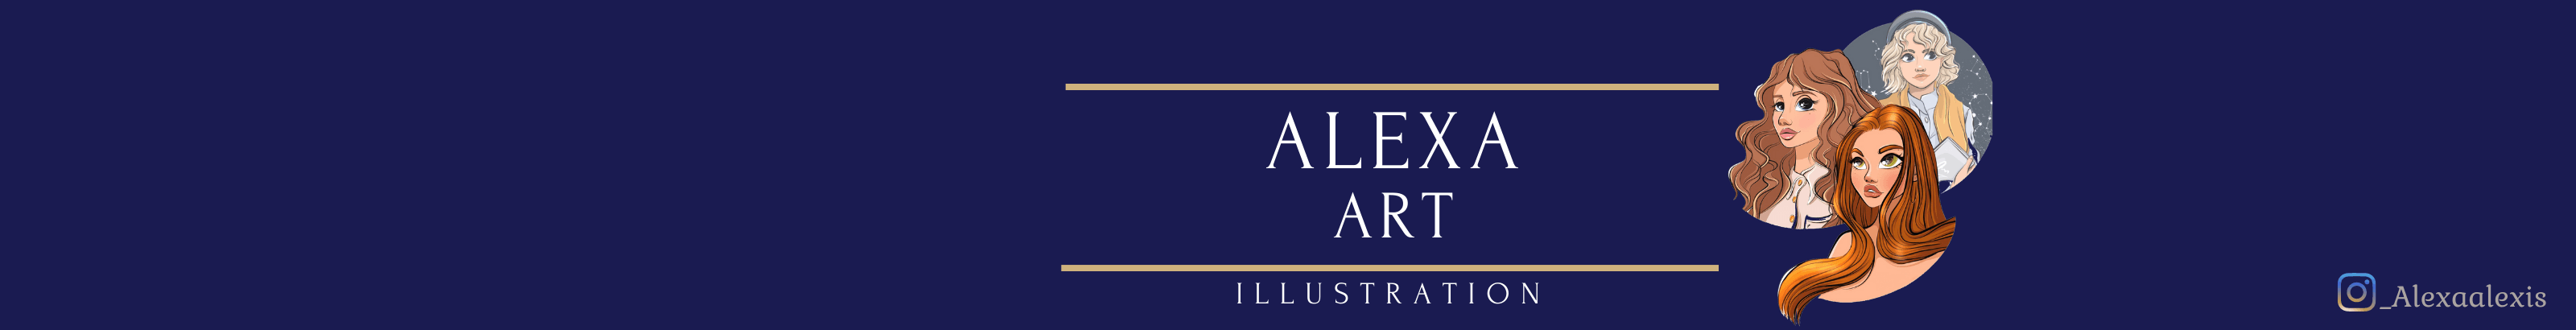 AlexaArt banner